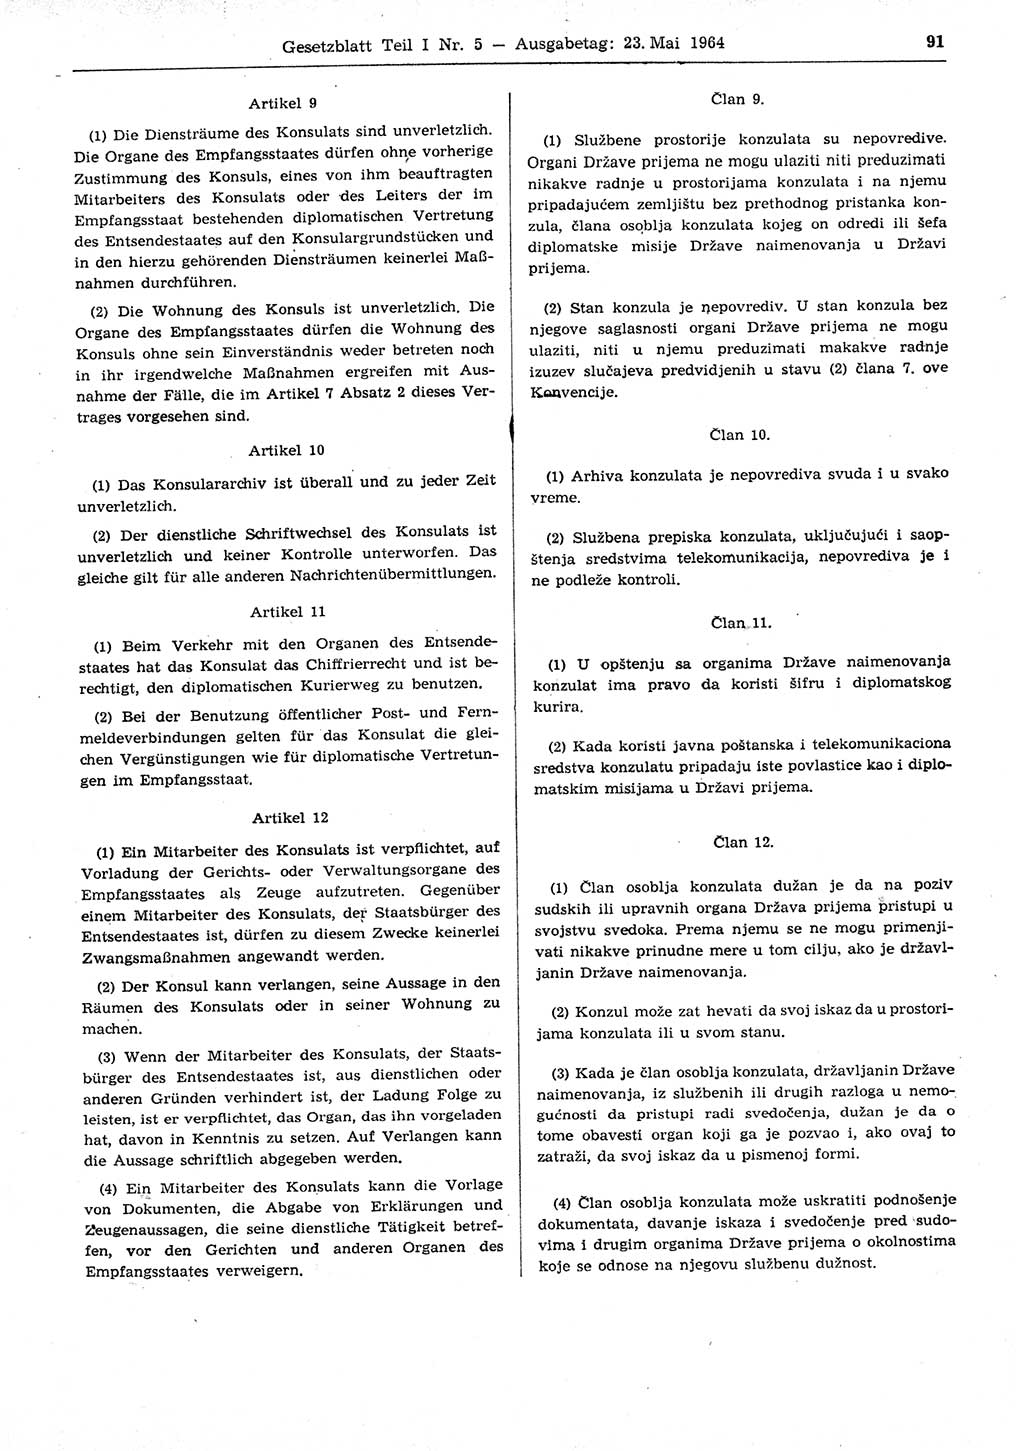 Gesetzblatt (GBl.) der Deutschen Demokratischen Republik (DDR) Teil Ⅰ 1964, Seite 91 (GBl. DDR Ⅰ 1964, S. 91)